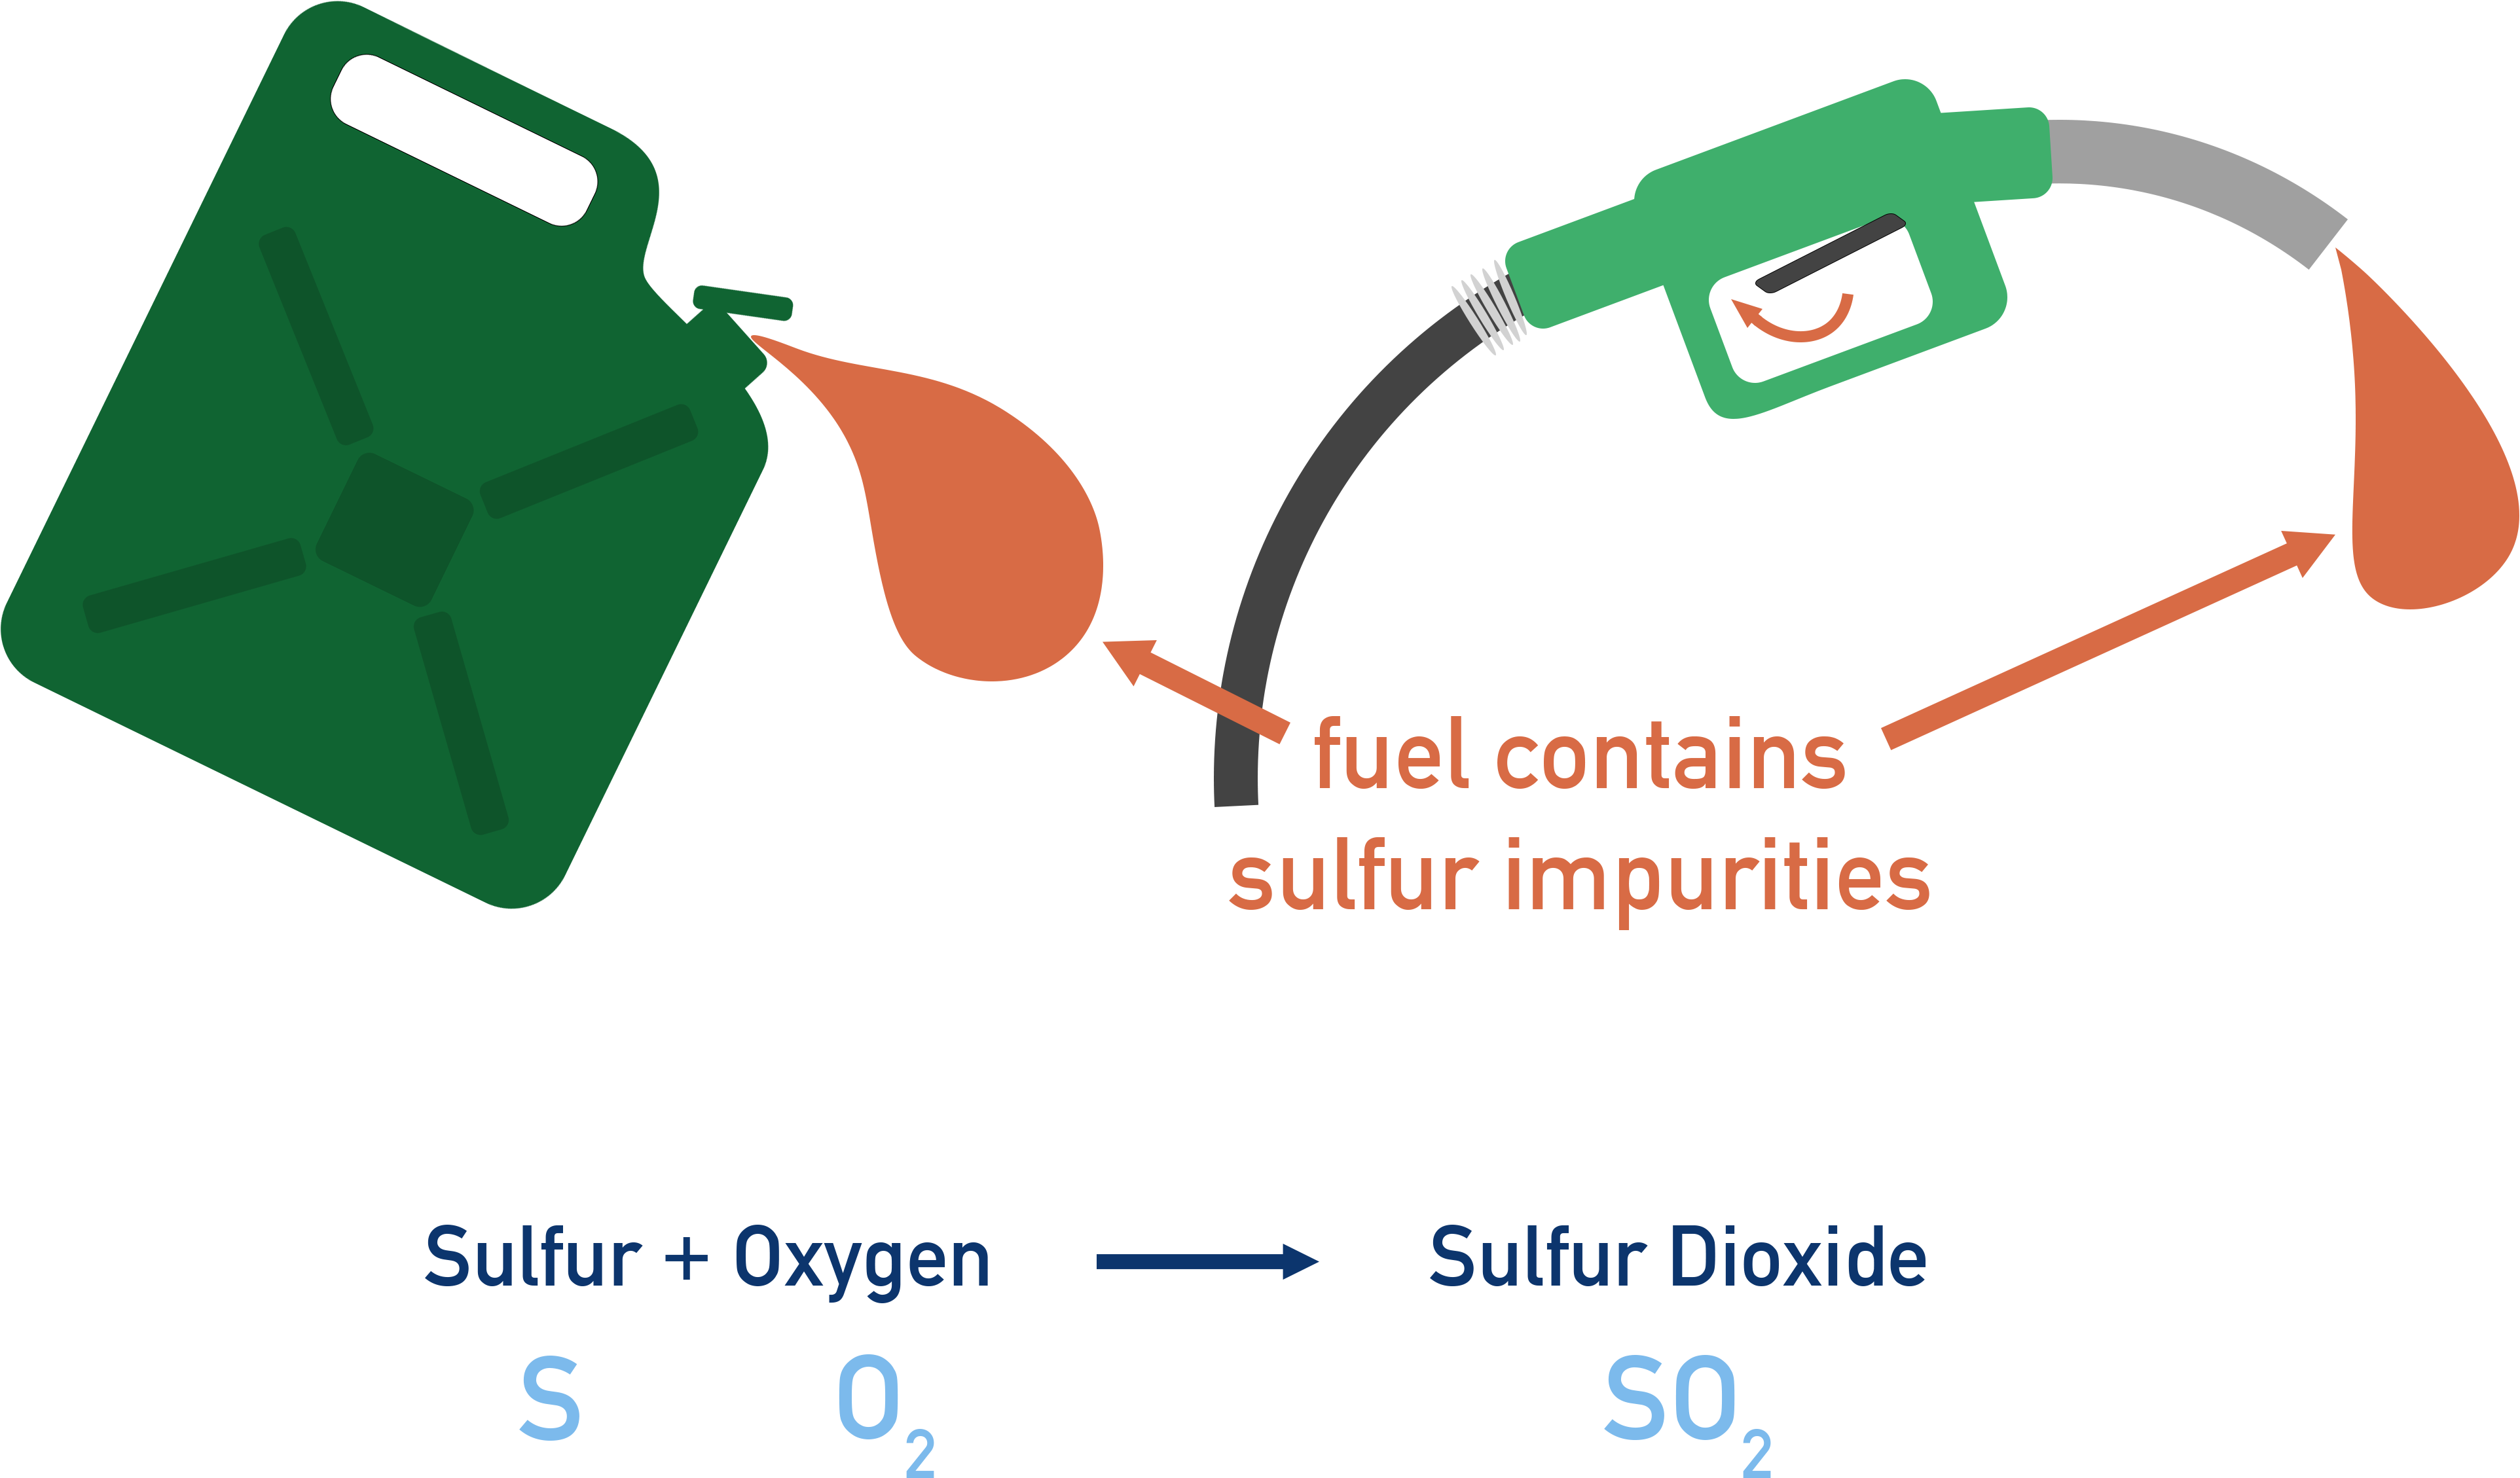 sulfur impurities acid rain alkane combustion